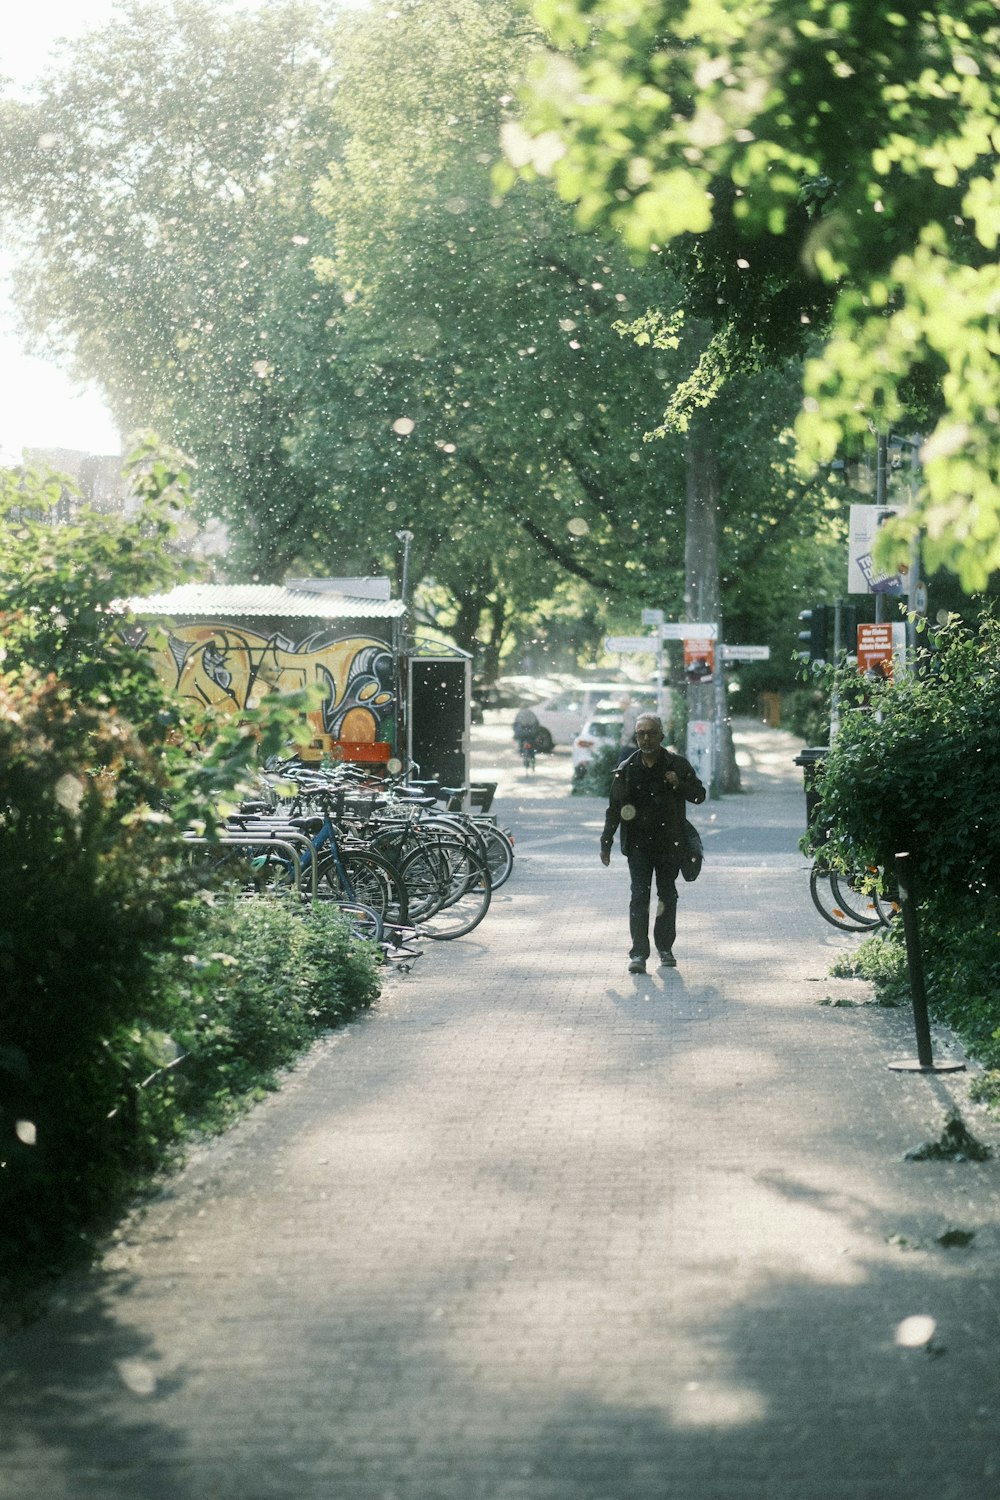 una persona caminando por una calle junto a bicicletas estacionadas